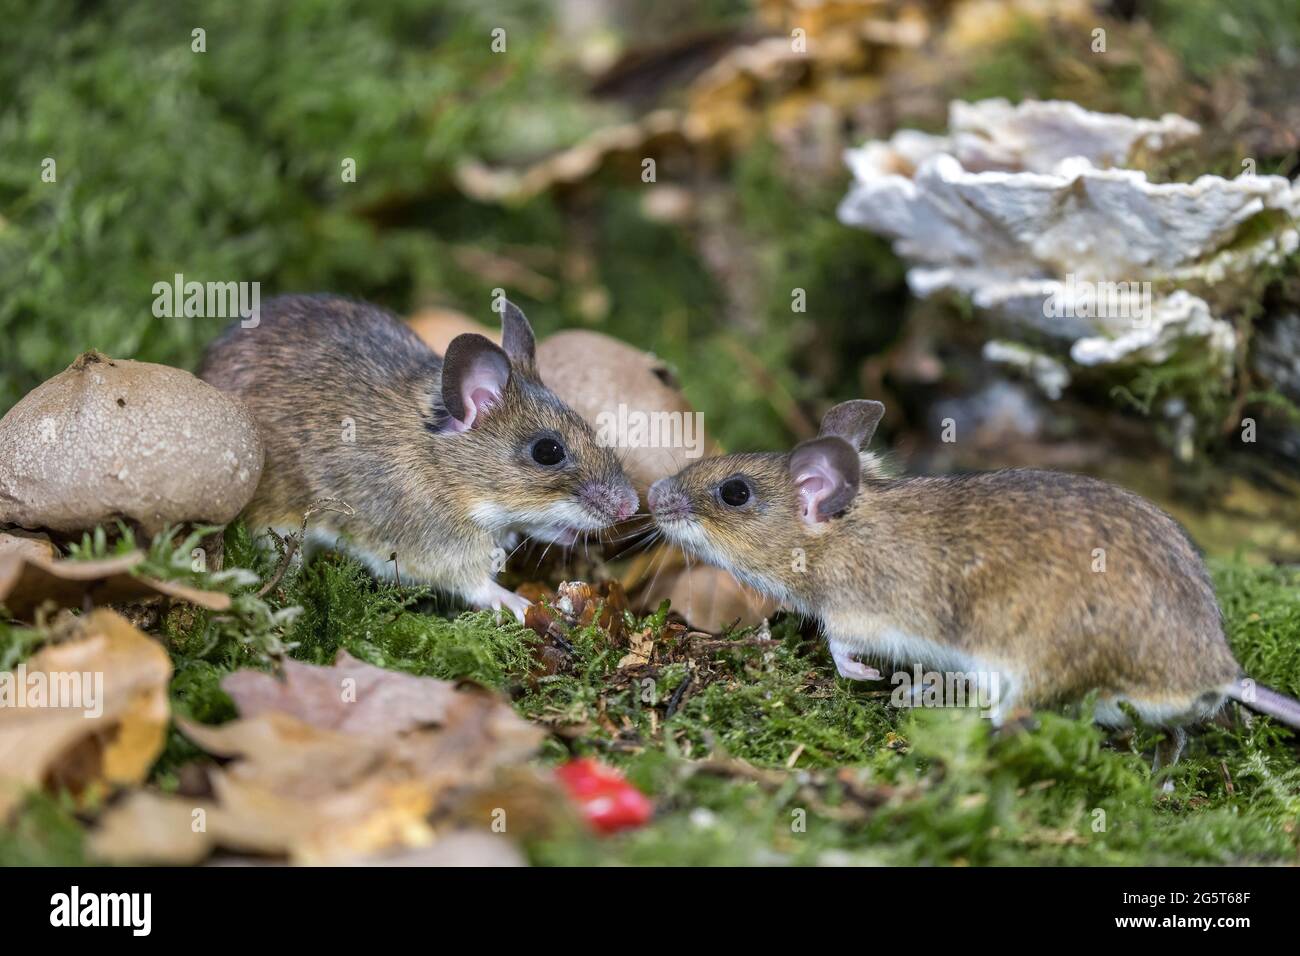 Ratón de cuello amarillo (Apodemus flavicollis), dos ratones de cuello amarillo se reúnen en el suelo del bosque, Alemania, Mecklemburgo-Pomerania Occidental Foto de stock